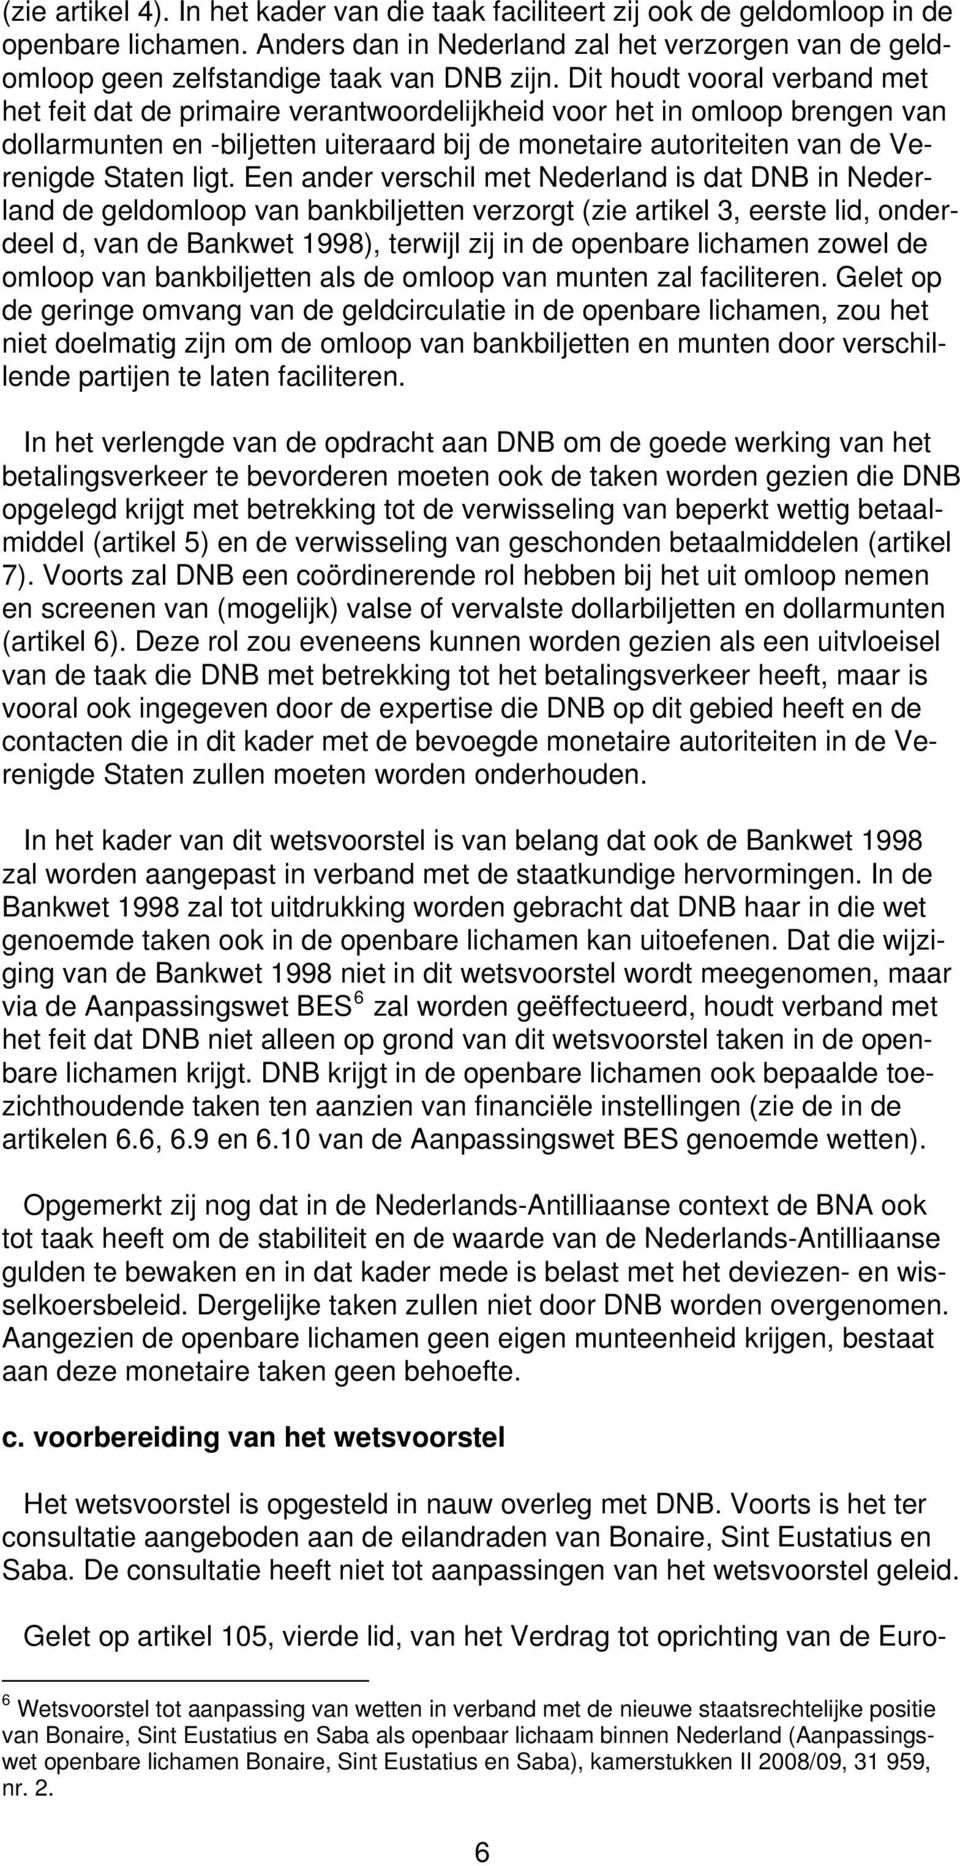 ligt. Een ander verschil met Nederland is dat DNB in Nederland de geldomloop van bankbiljetten verzorgt (zie artikel 3, eerste lid, onderdeel d, van de Bankwet 1998), terwijl zij in de openbare